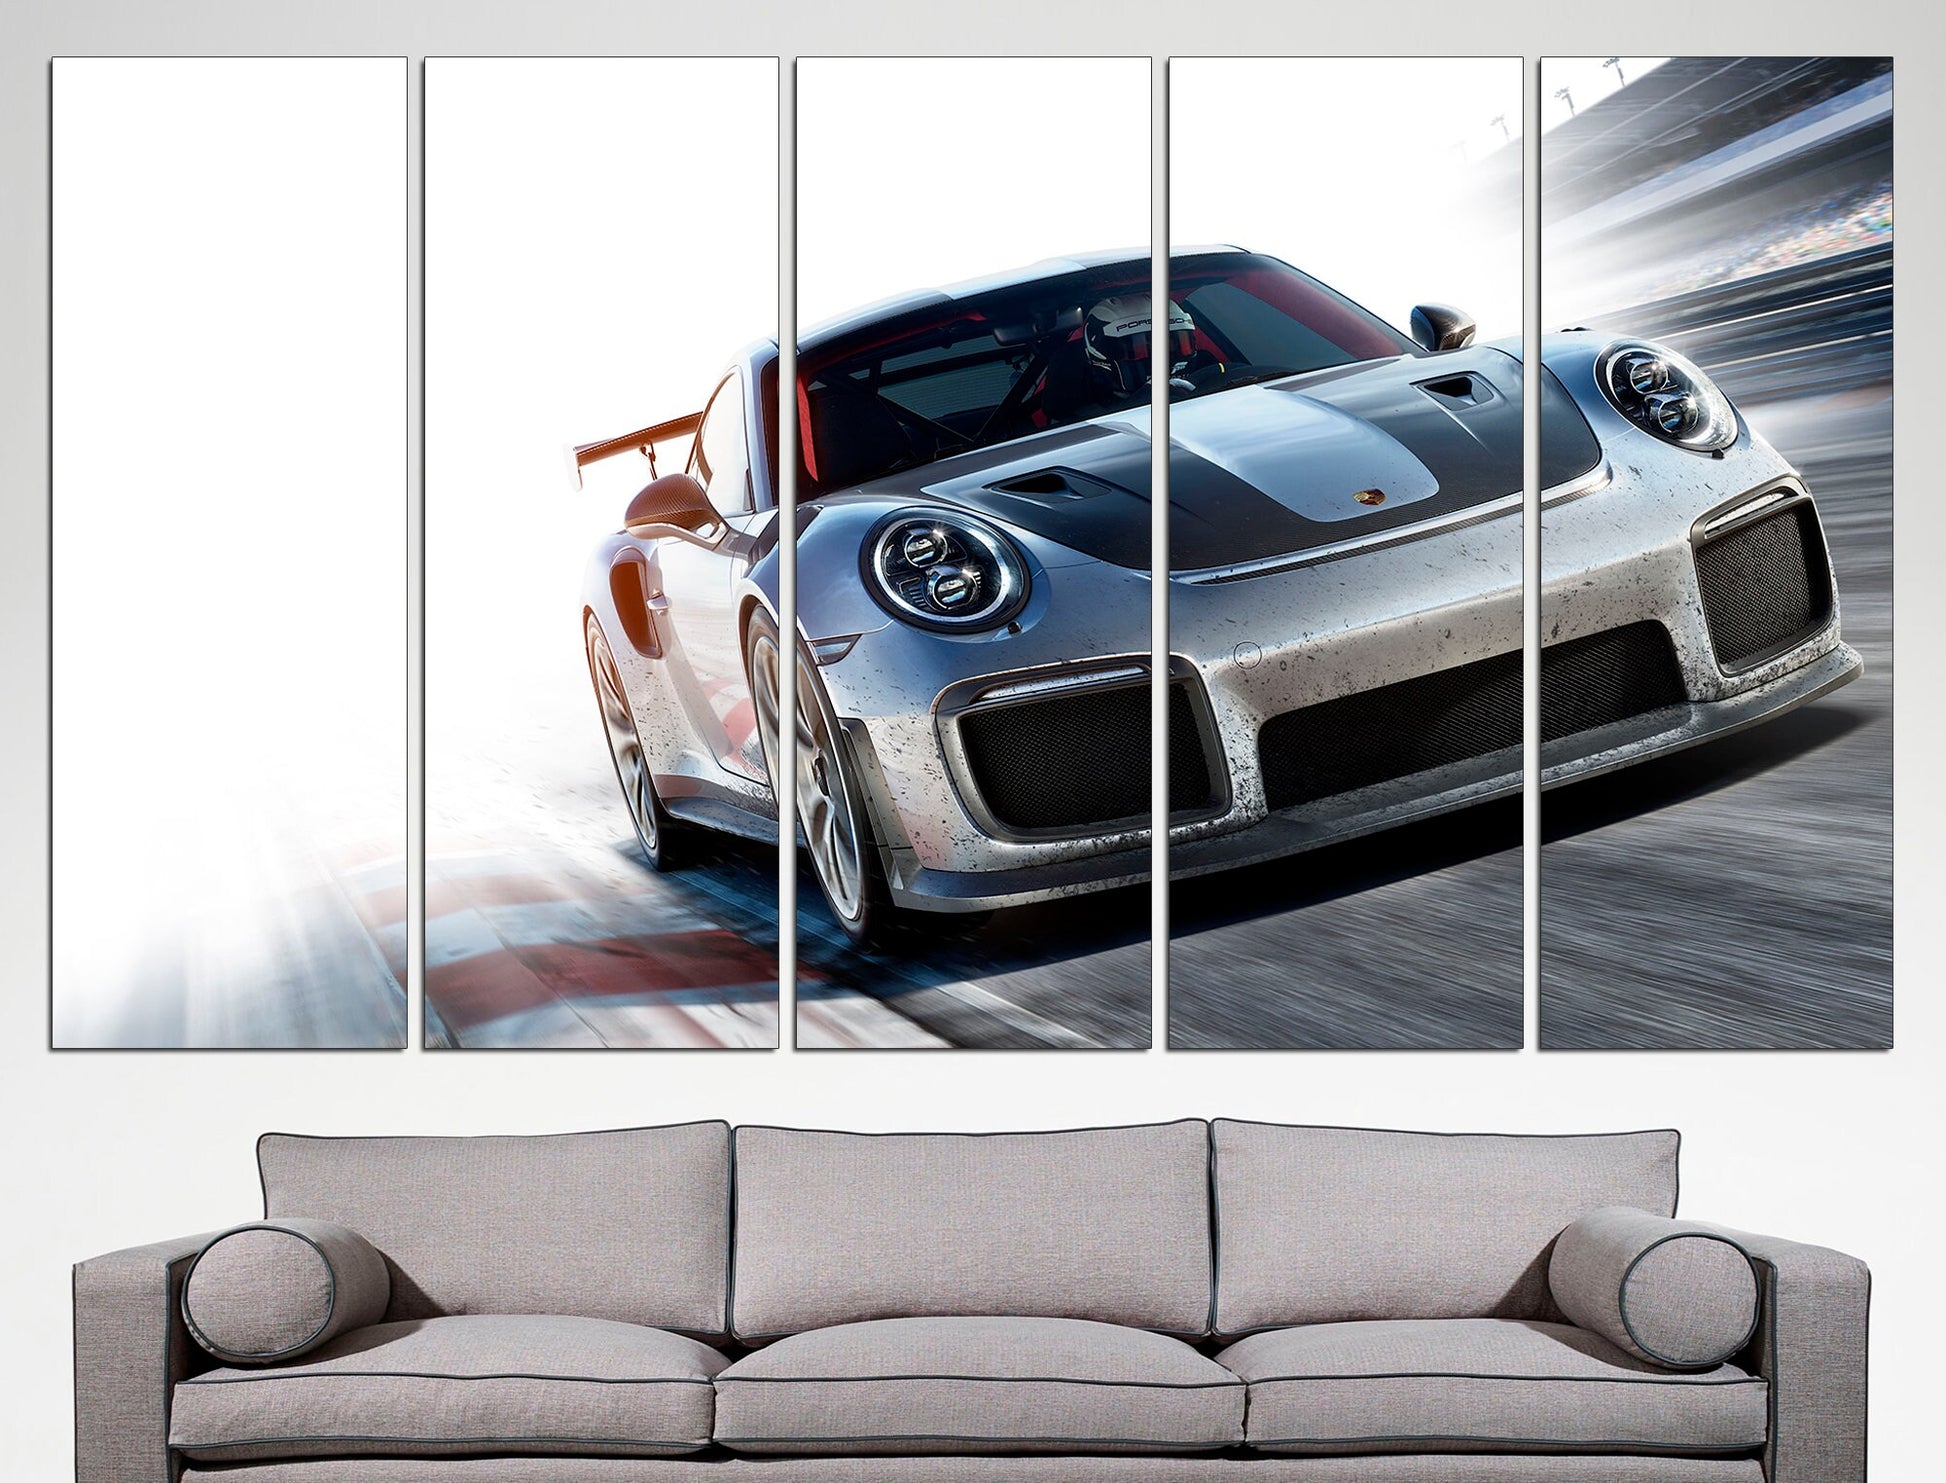 Porsche Poster Porsche Room Decor Porsche Wall Art, Automotive Art Porsche Print Porsche Wall Decor